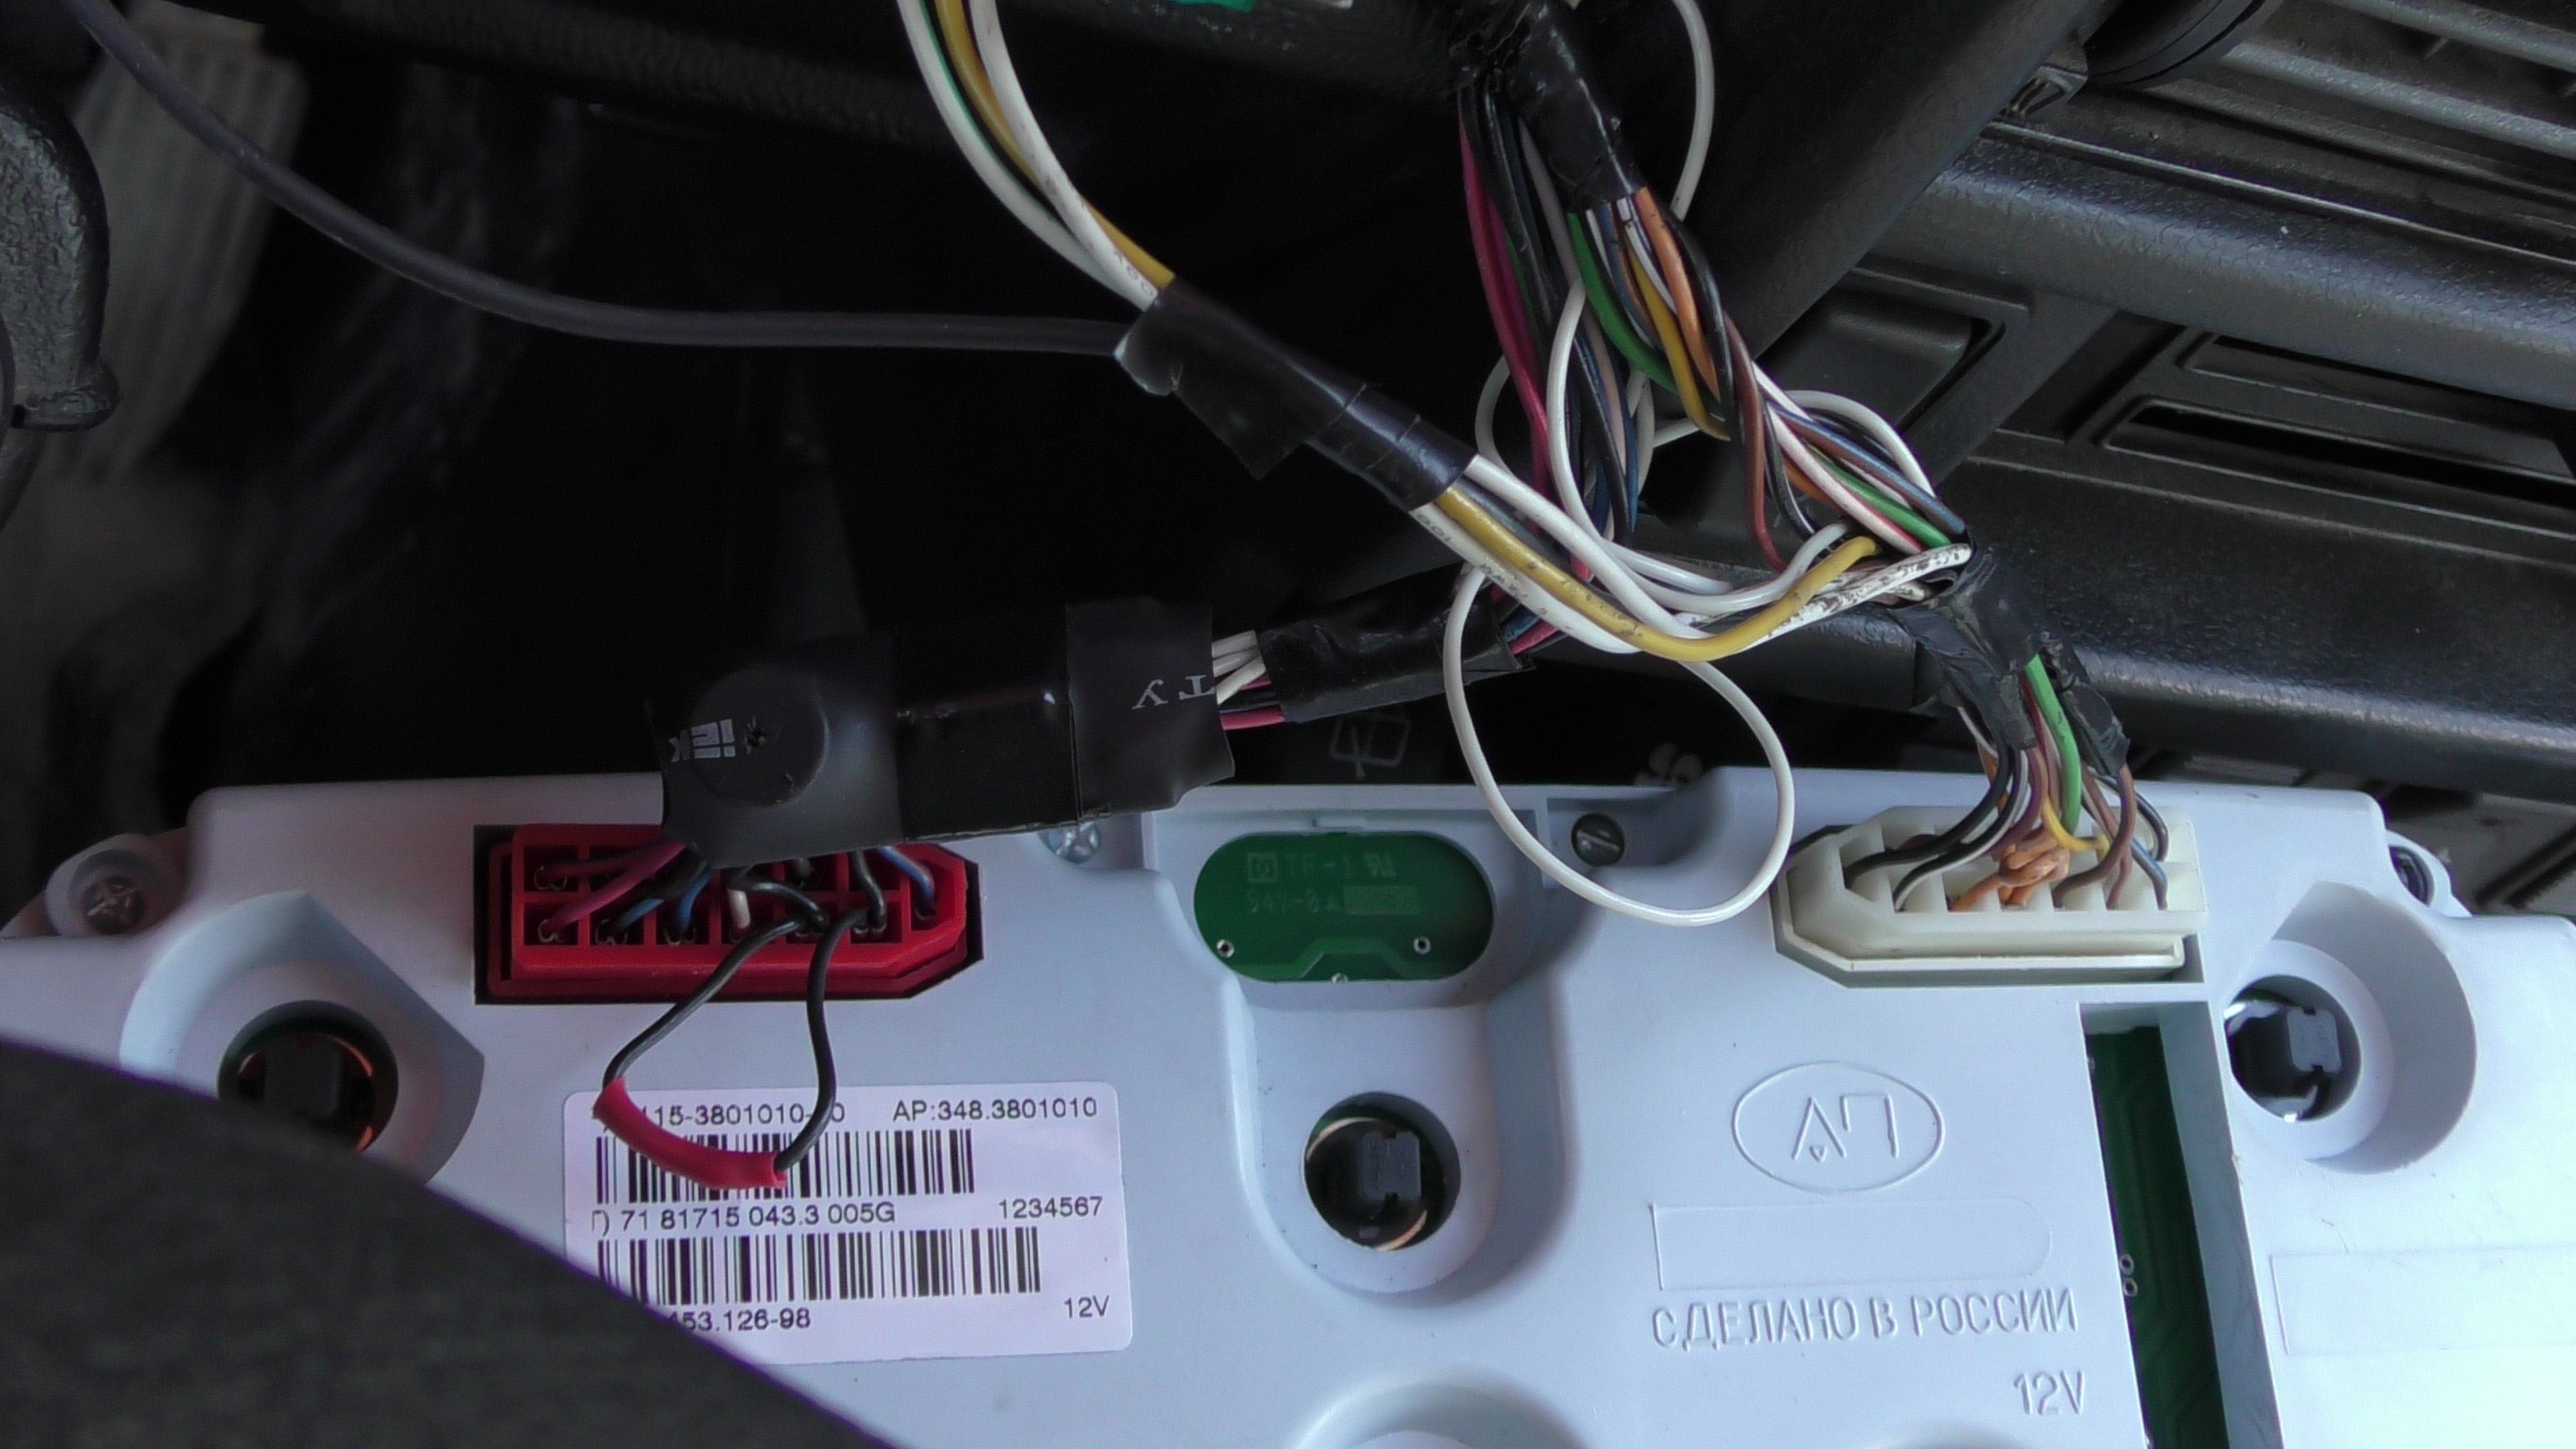 Звуковой сигнализатор ручного тормоза, установленный на автомобиле.